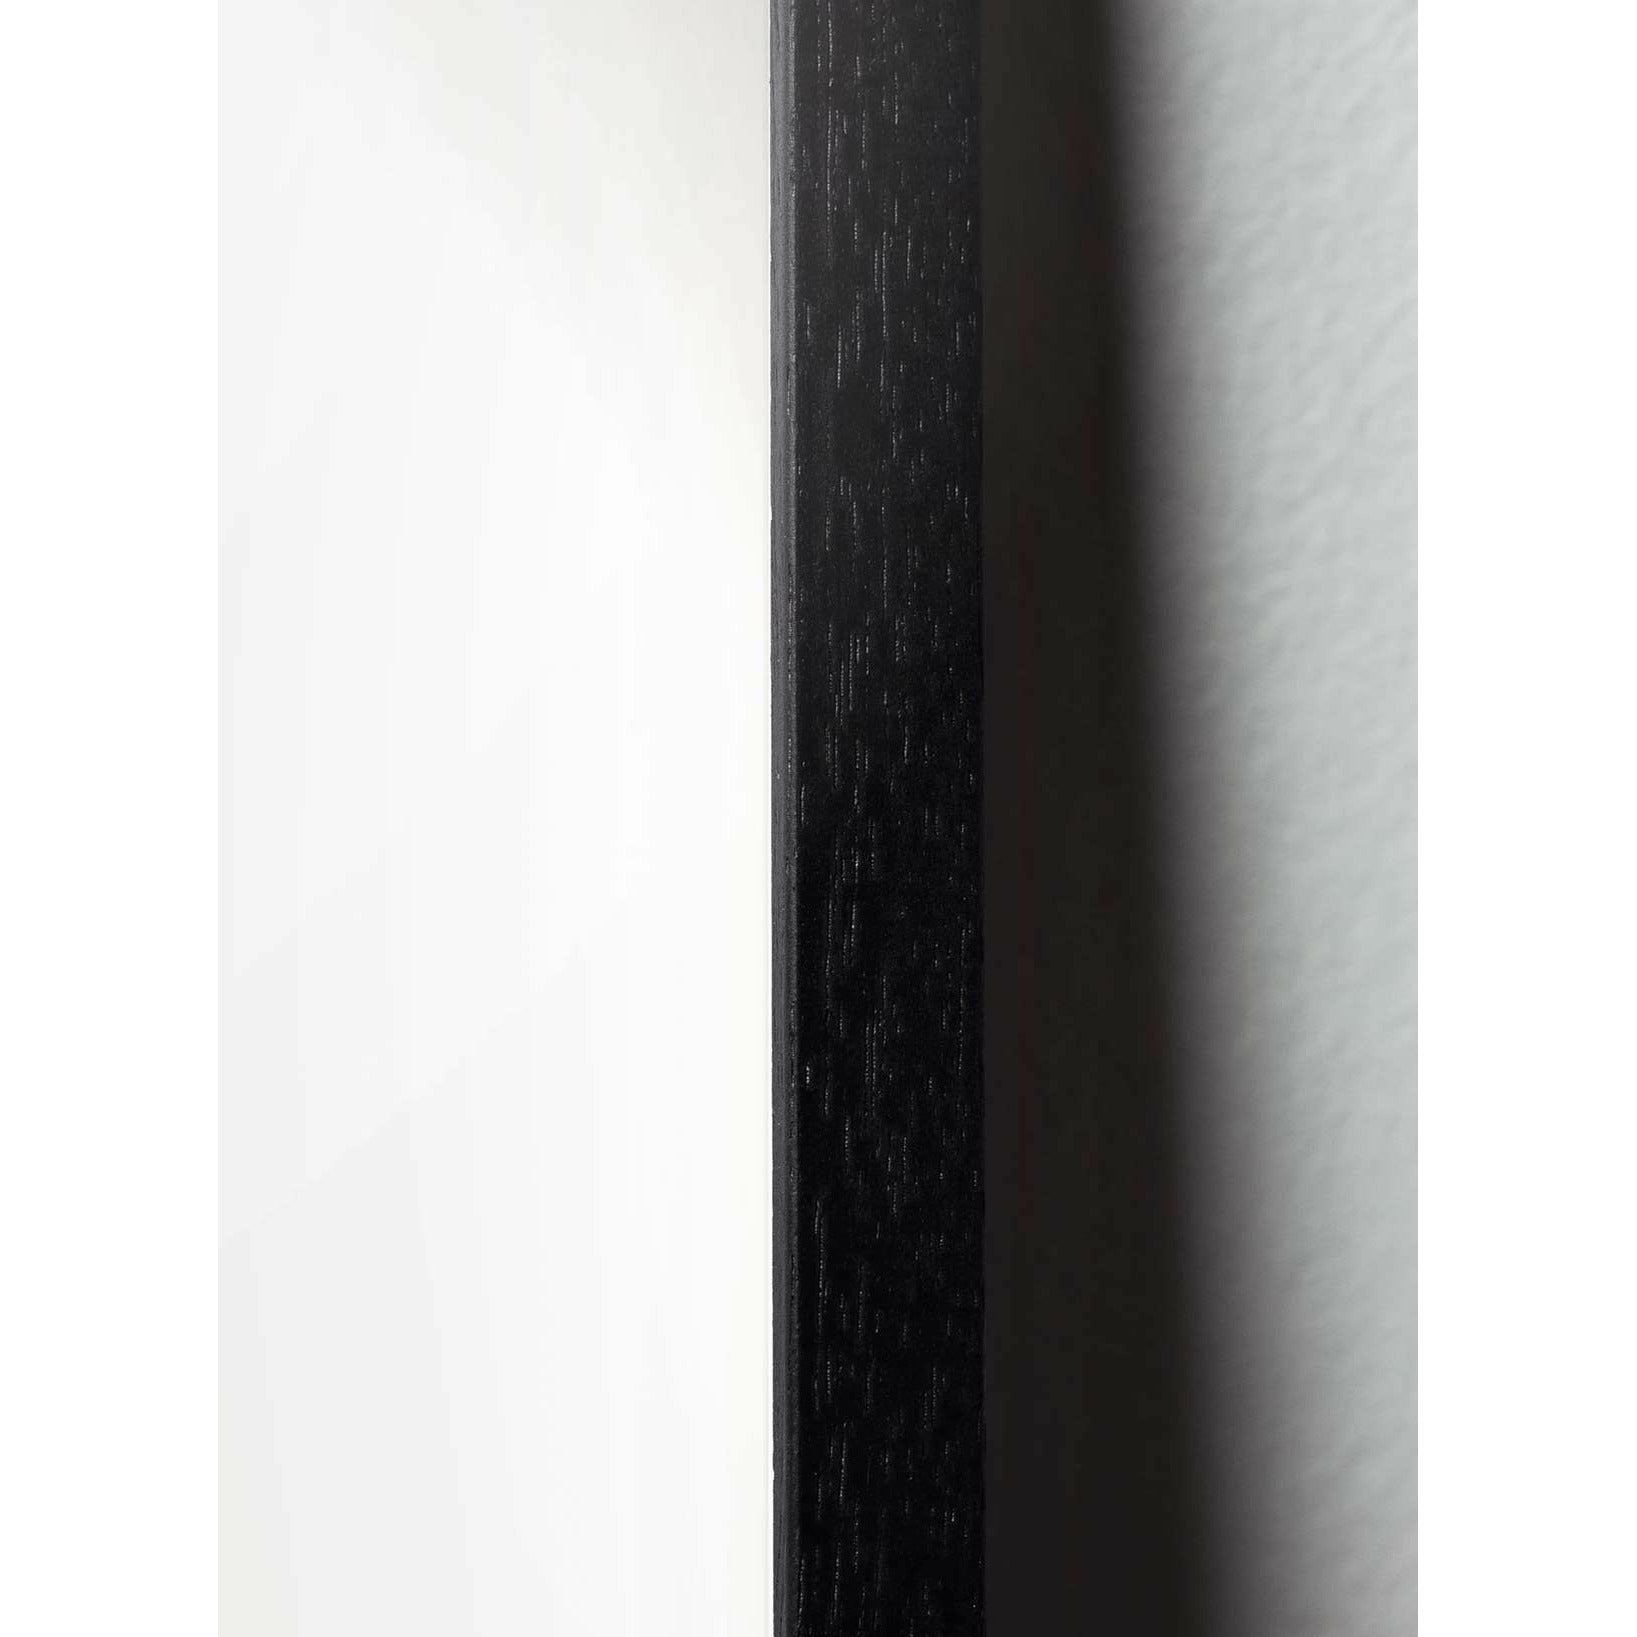 Brainchild Joutsenlinjajuliste, kehys, joka on valmistettu mustasta lakatusta puusta 30x40 cm, sininen tausta